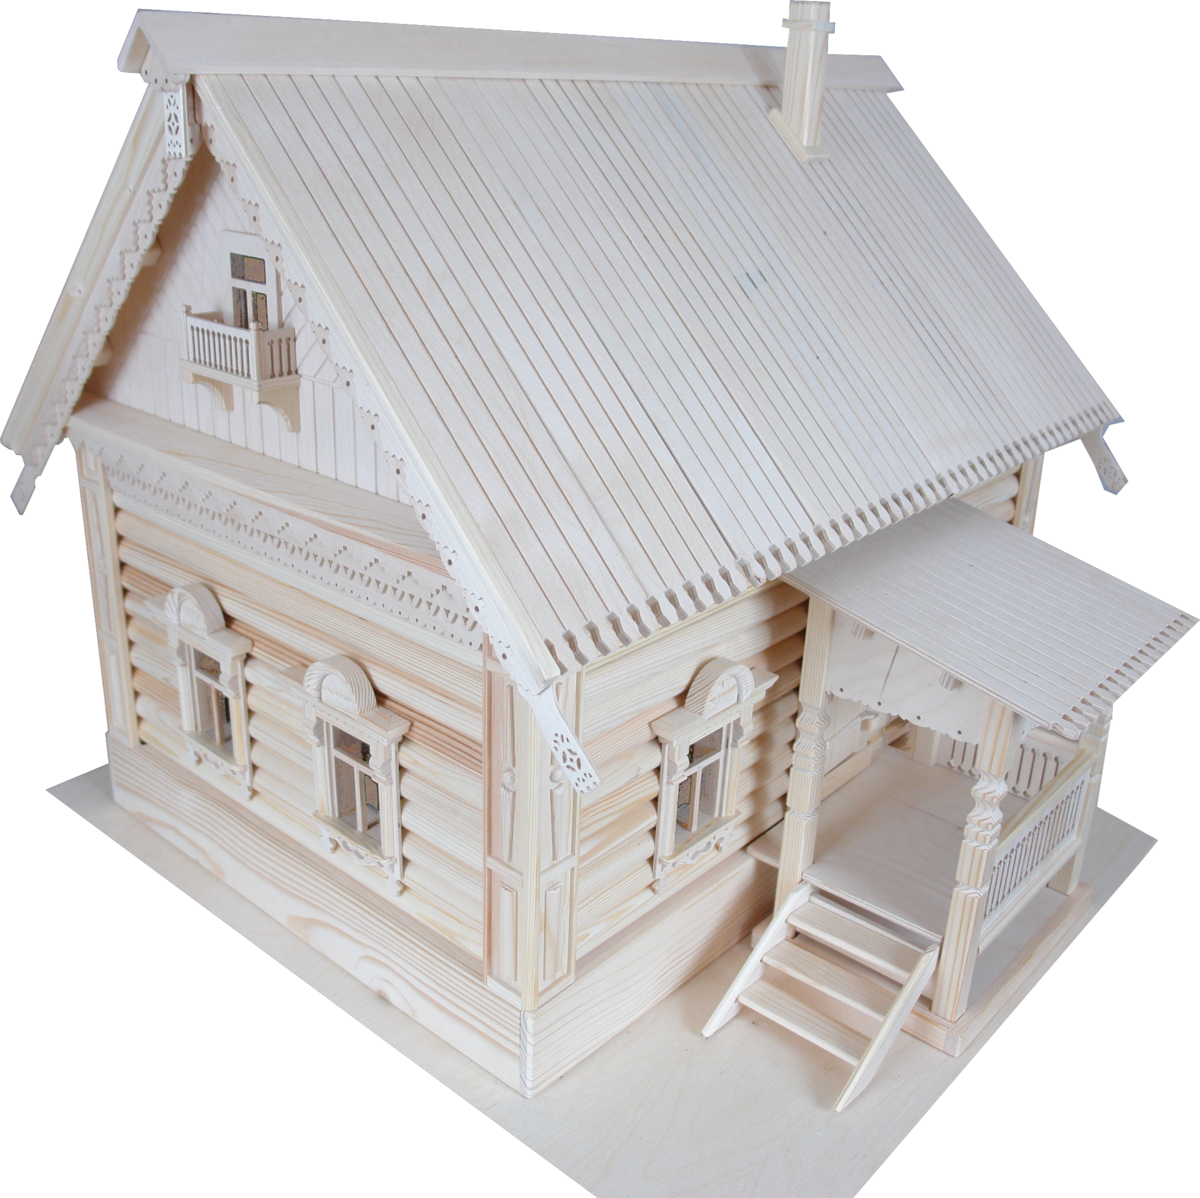 Сборные модели домов. Макеты деревянных домиков. Модель домика. Деревянный игрушечный домик. Макет избы.